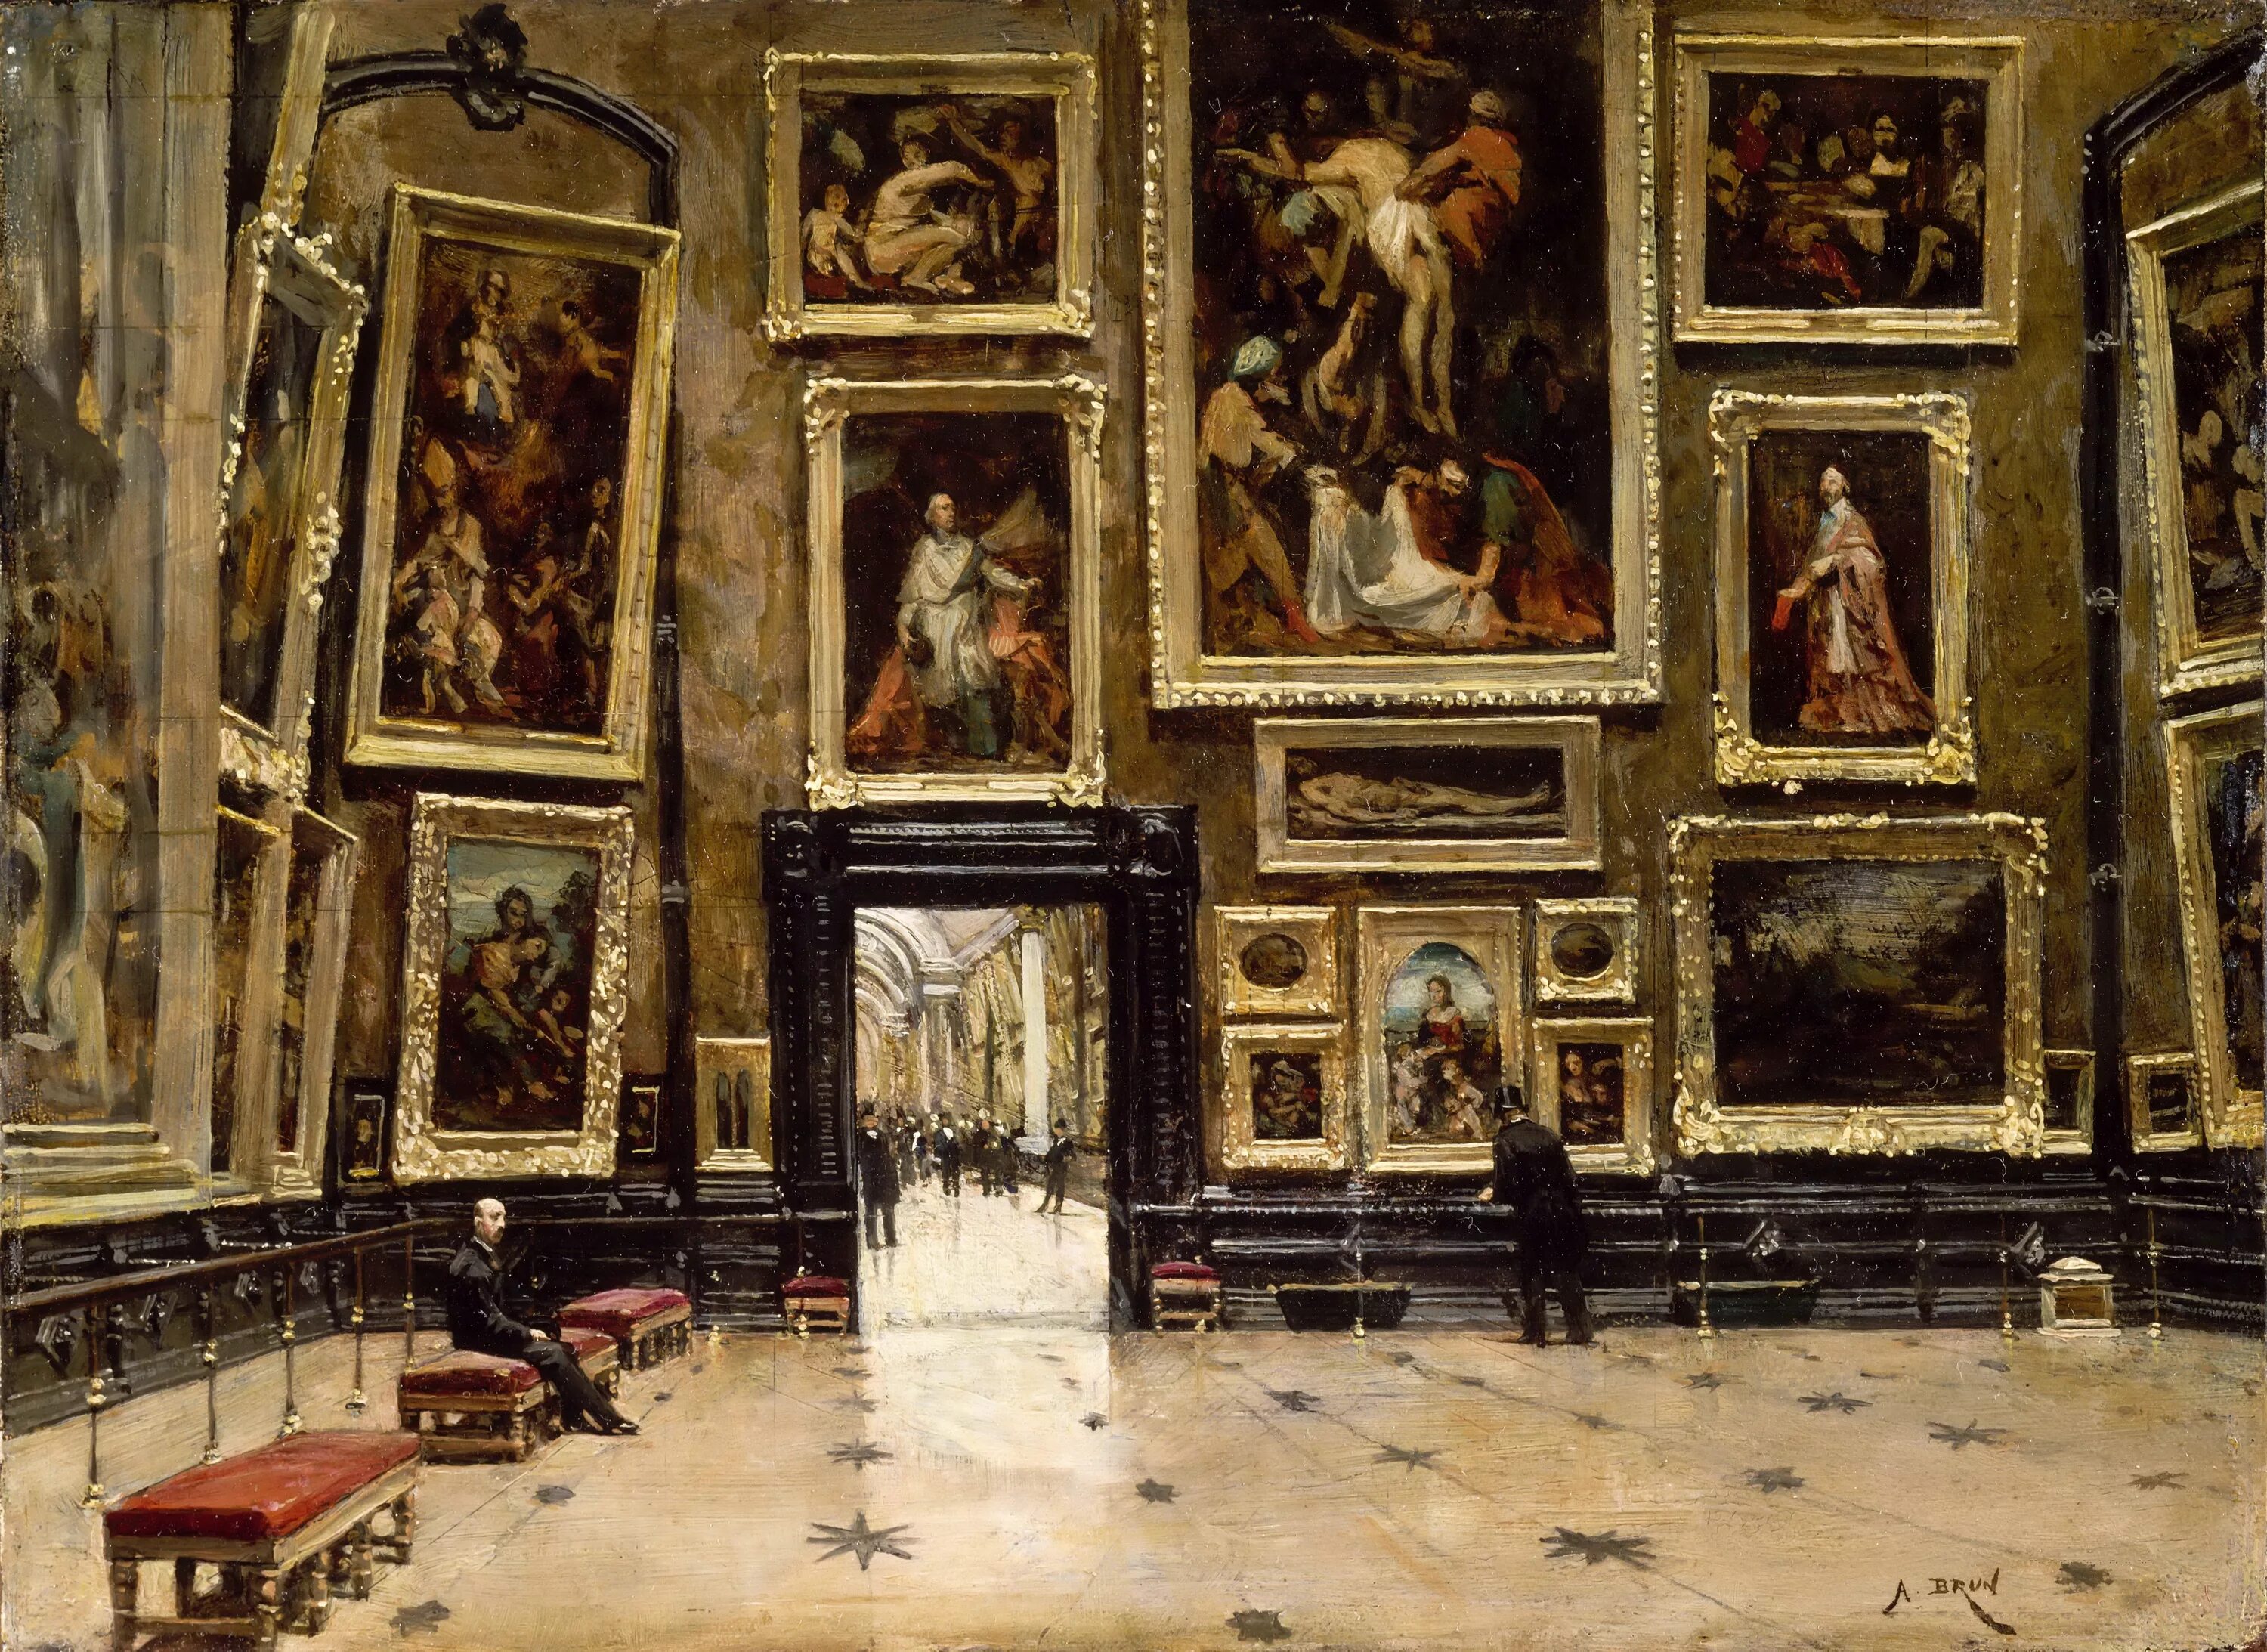 Перед тобой четыре произведения изобразительного искусства. Лувр картинная галерея. Зал Рубенса в Эрмитаже. Музеи. Лувр. Париж. Музей Лувр в Париже картины.